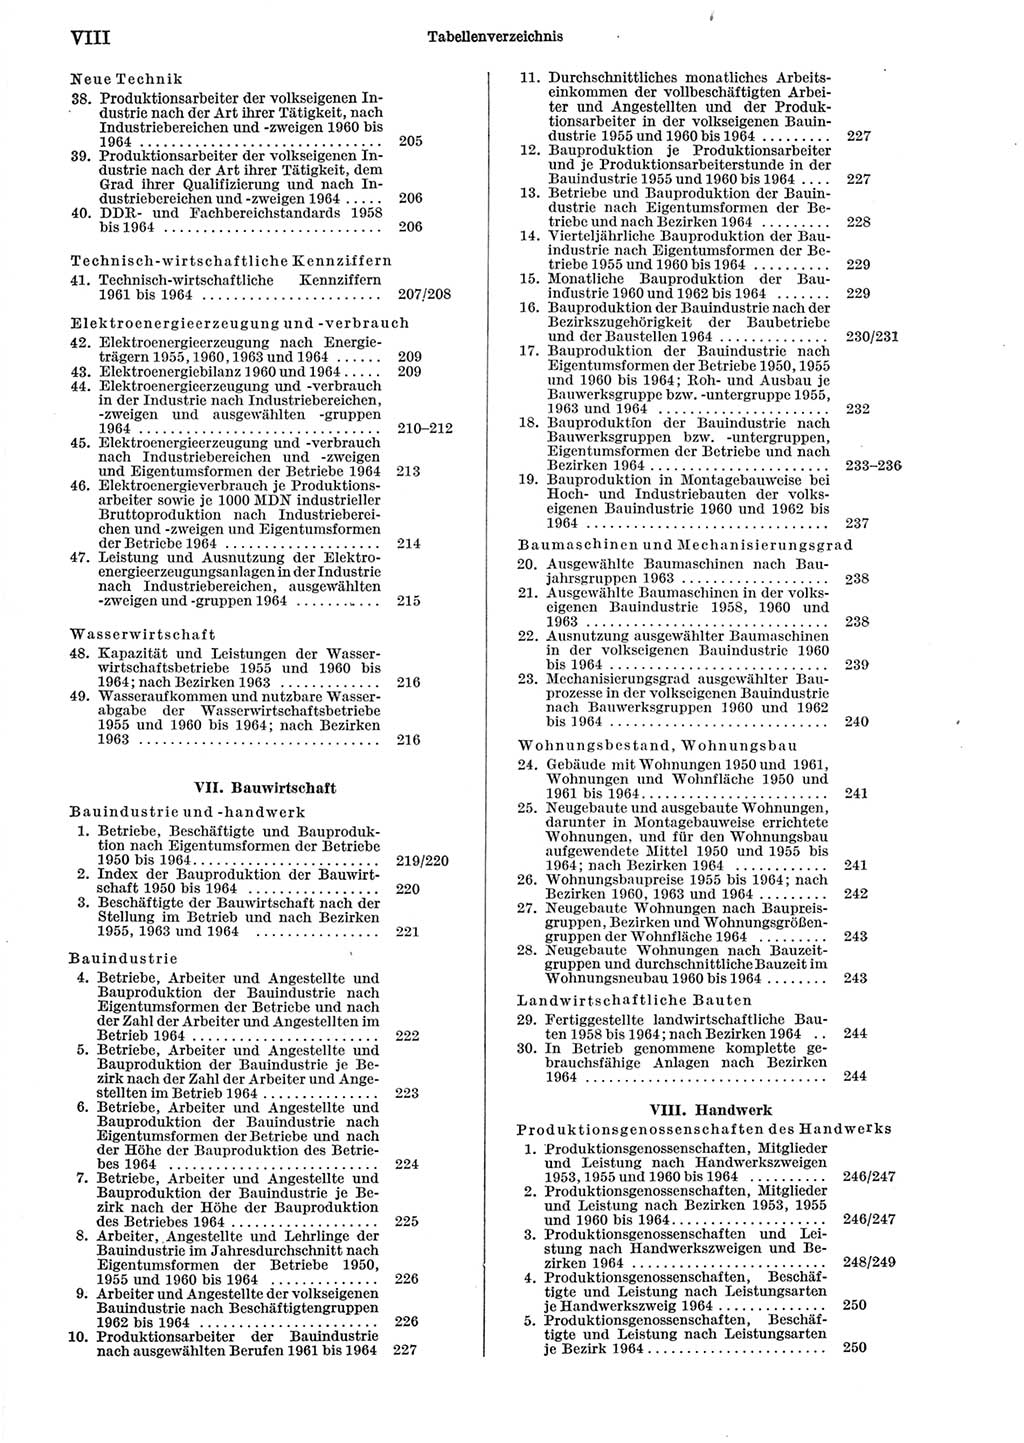 Statistisches Jahrbuch der Deutschen Demokratischen Republik (DDR) 1965, Seite 8 (Stat. Jb. DDR 1965, S. 8)